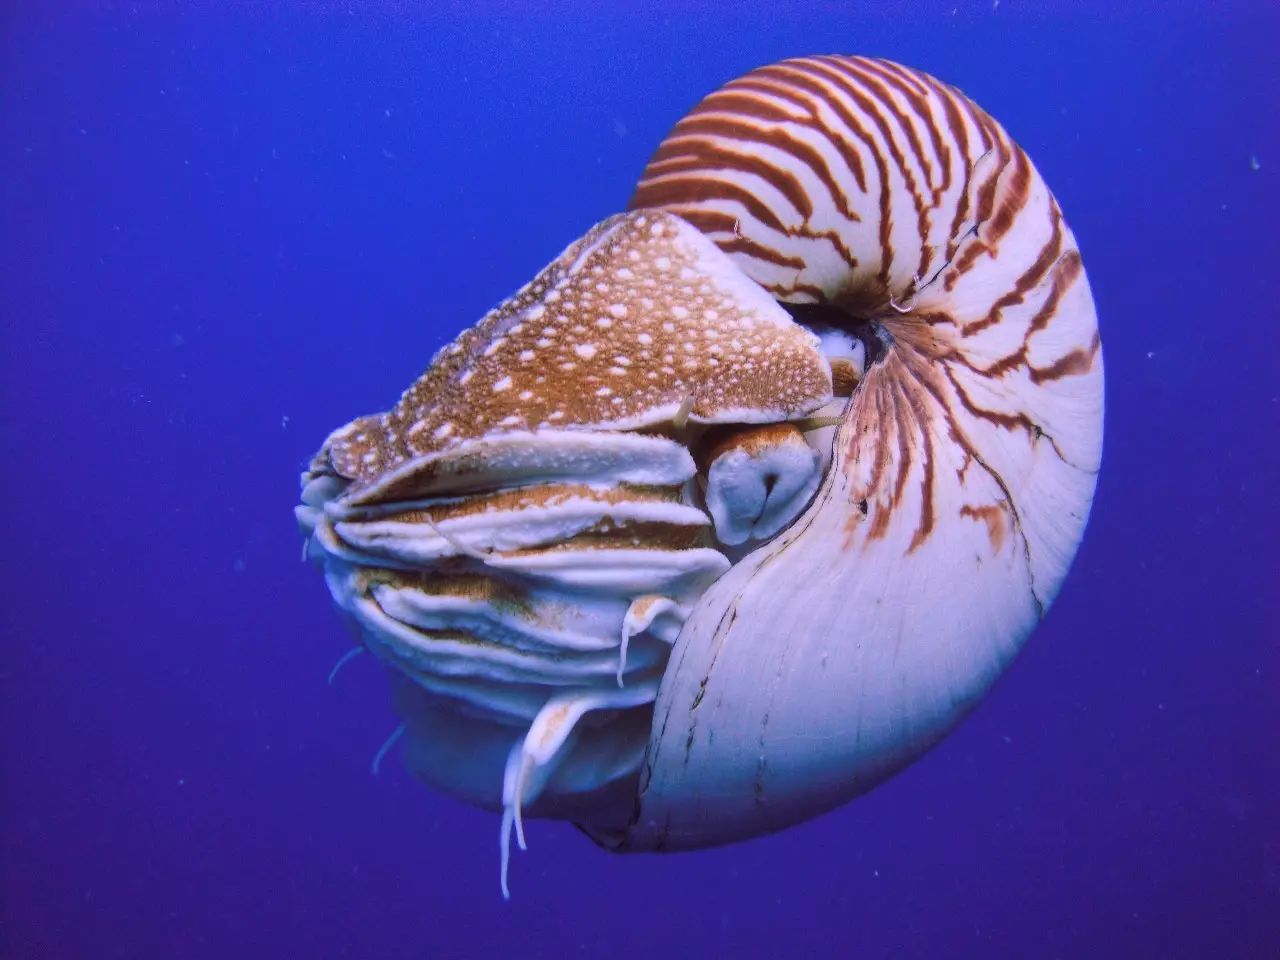 今日主角:帕劳鹦鹉螺.图片:manuae wikipedia